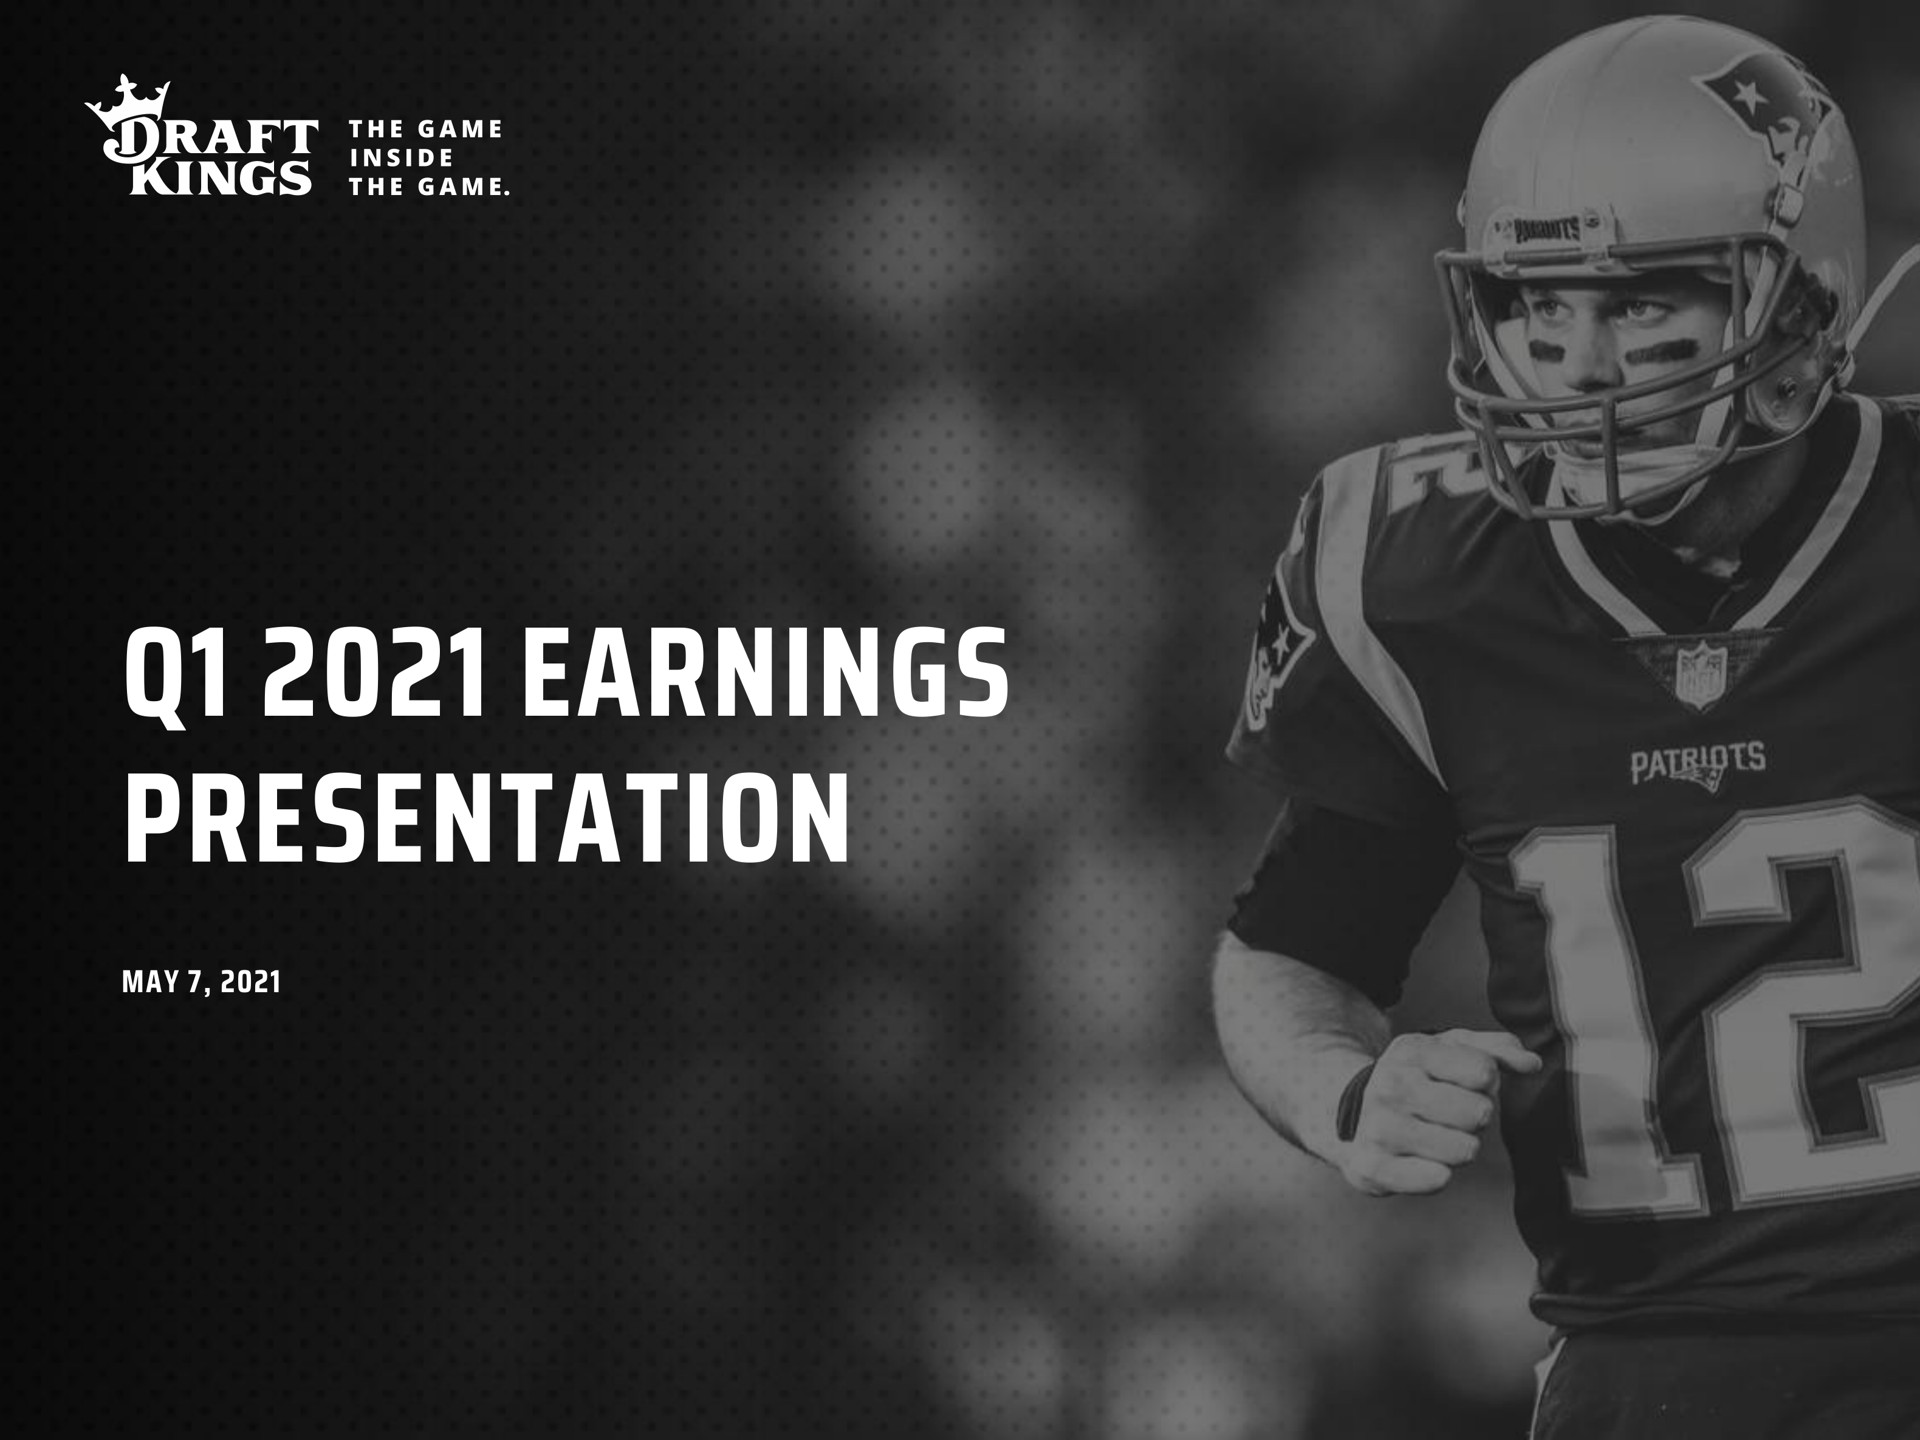 earnings presentation at che at | DraftKings